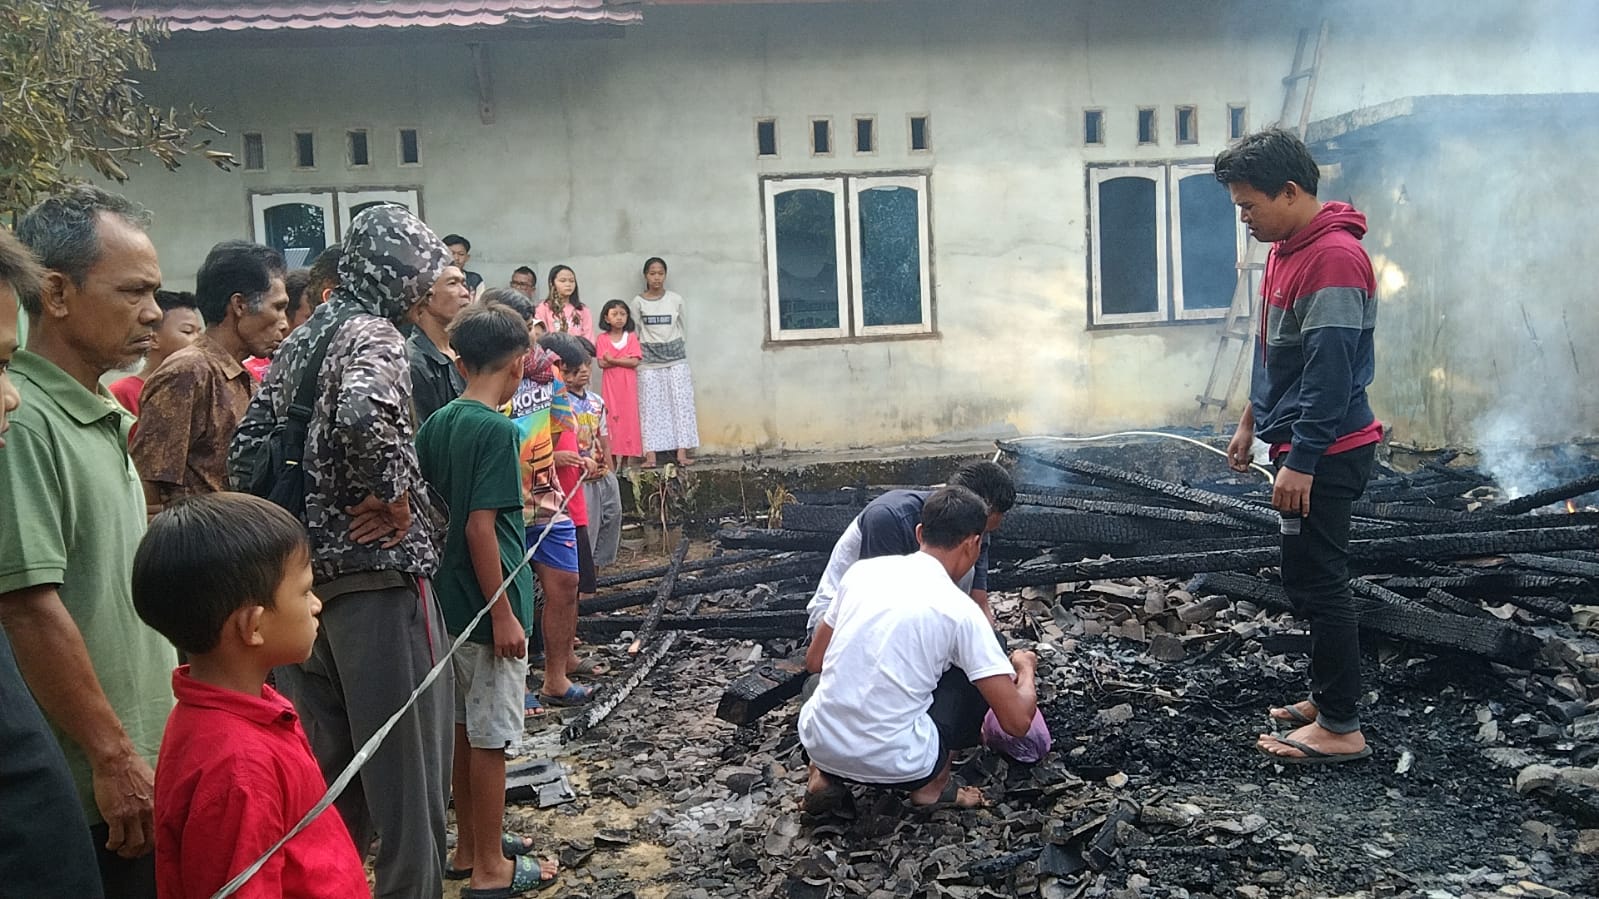 Kebakaran di Cilodang Bungo, 1 Anak Meninggal Dunia